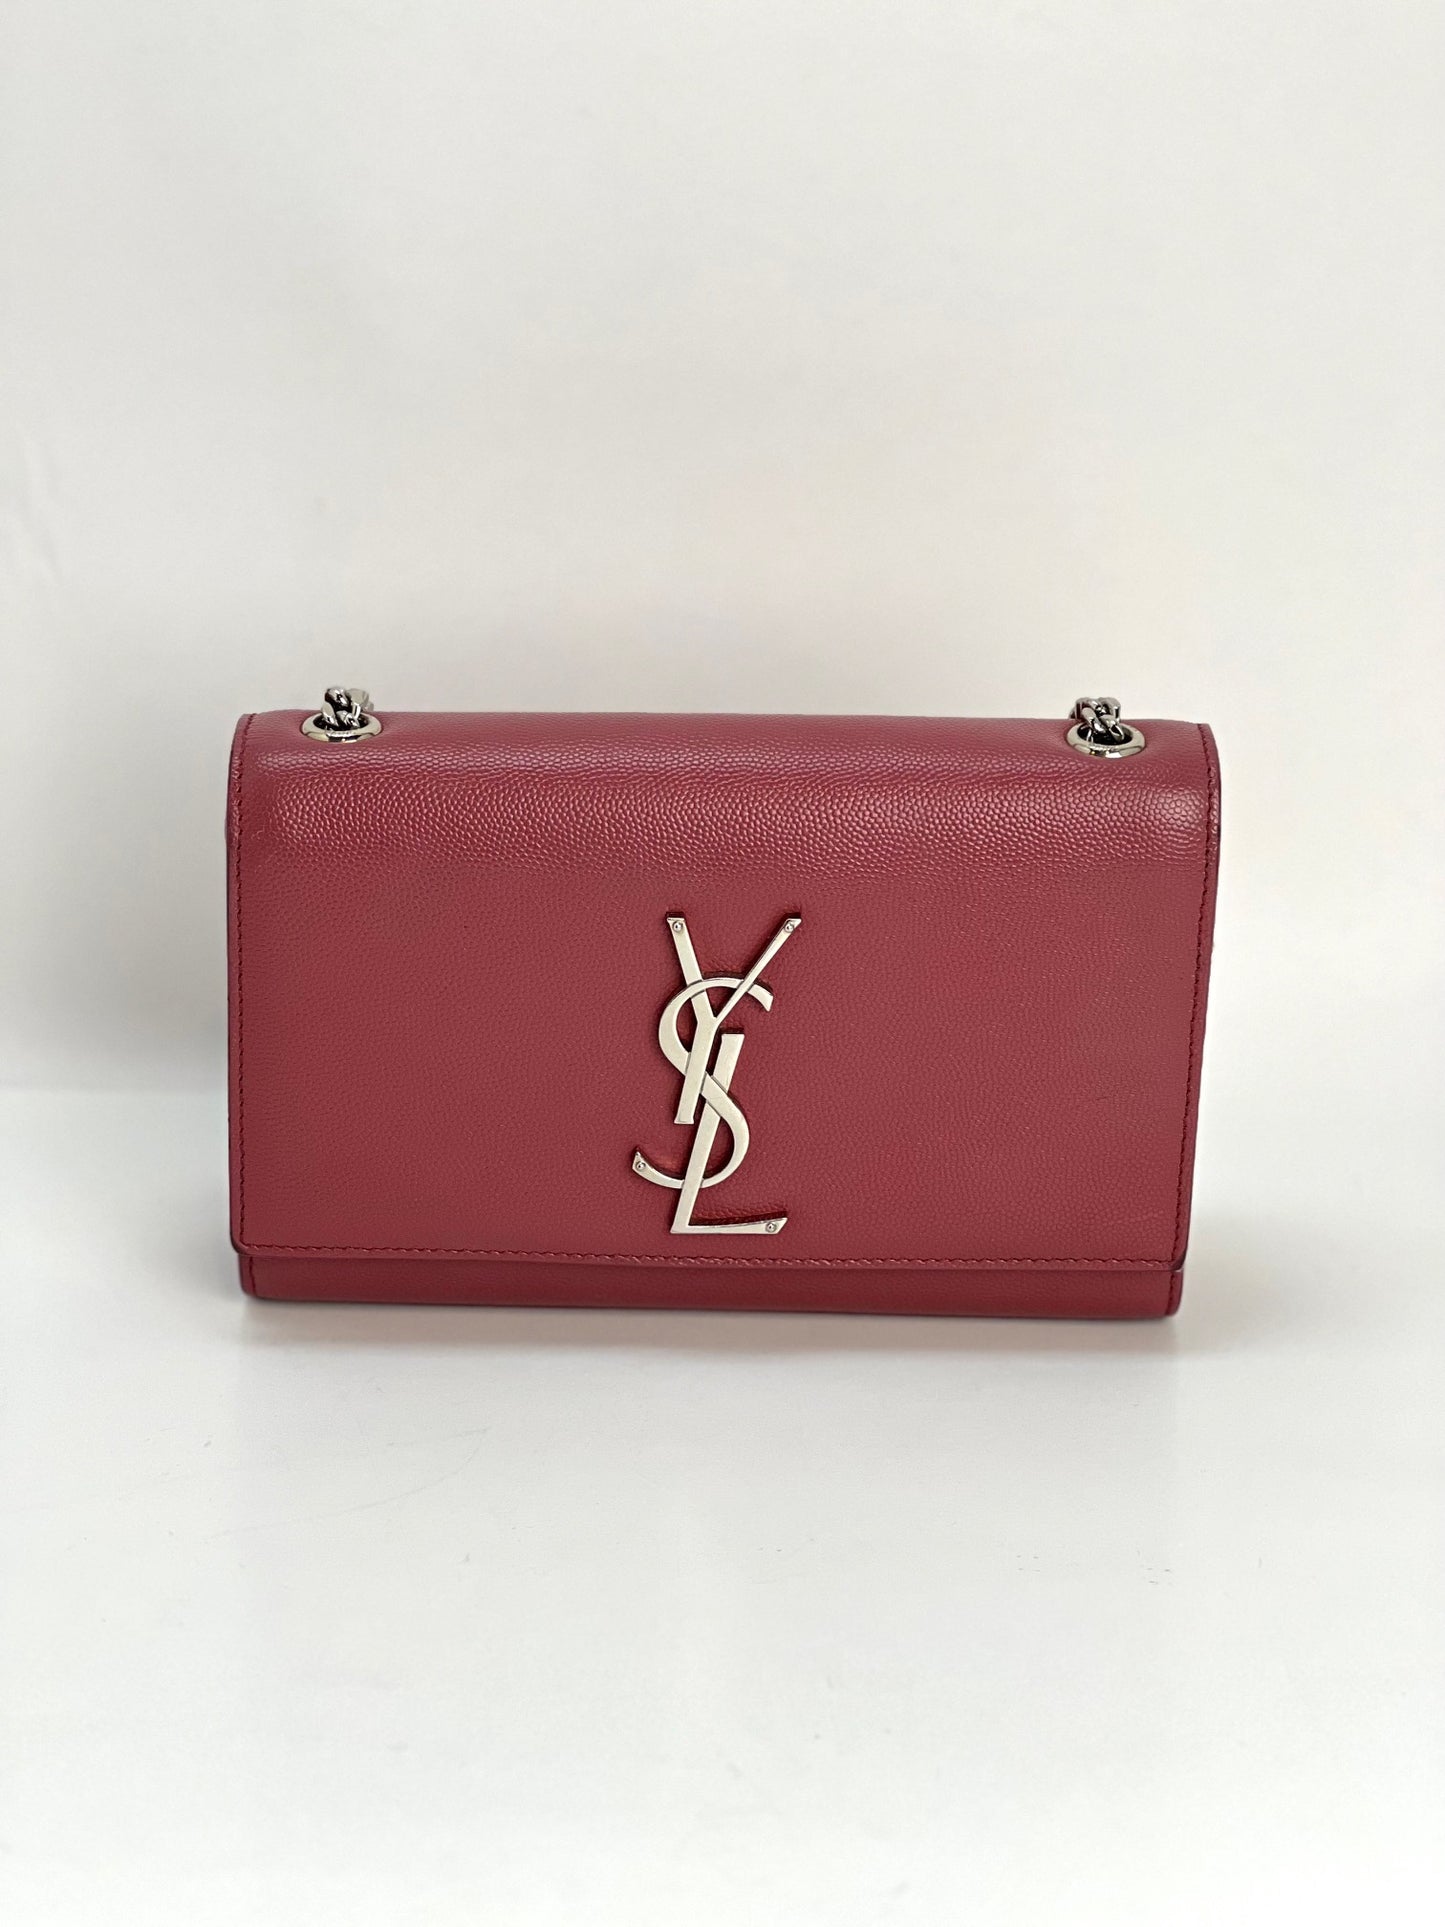 SAINT LAURENT: Kate Monogram bag in grain de poudre leather - Beige